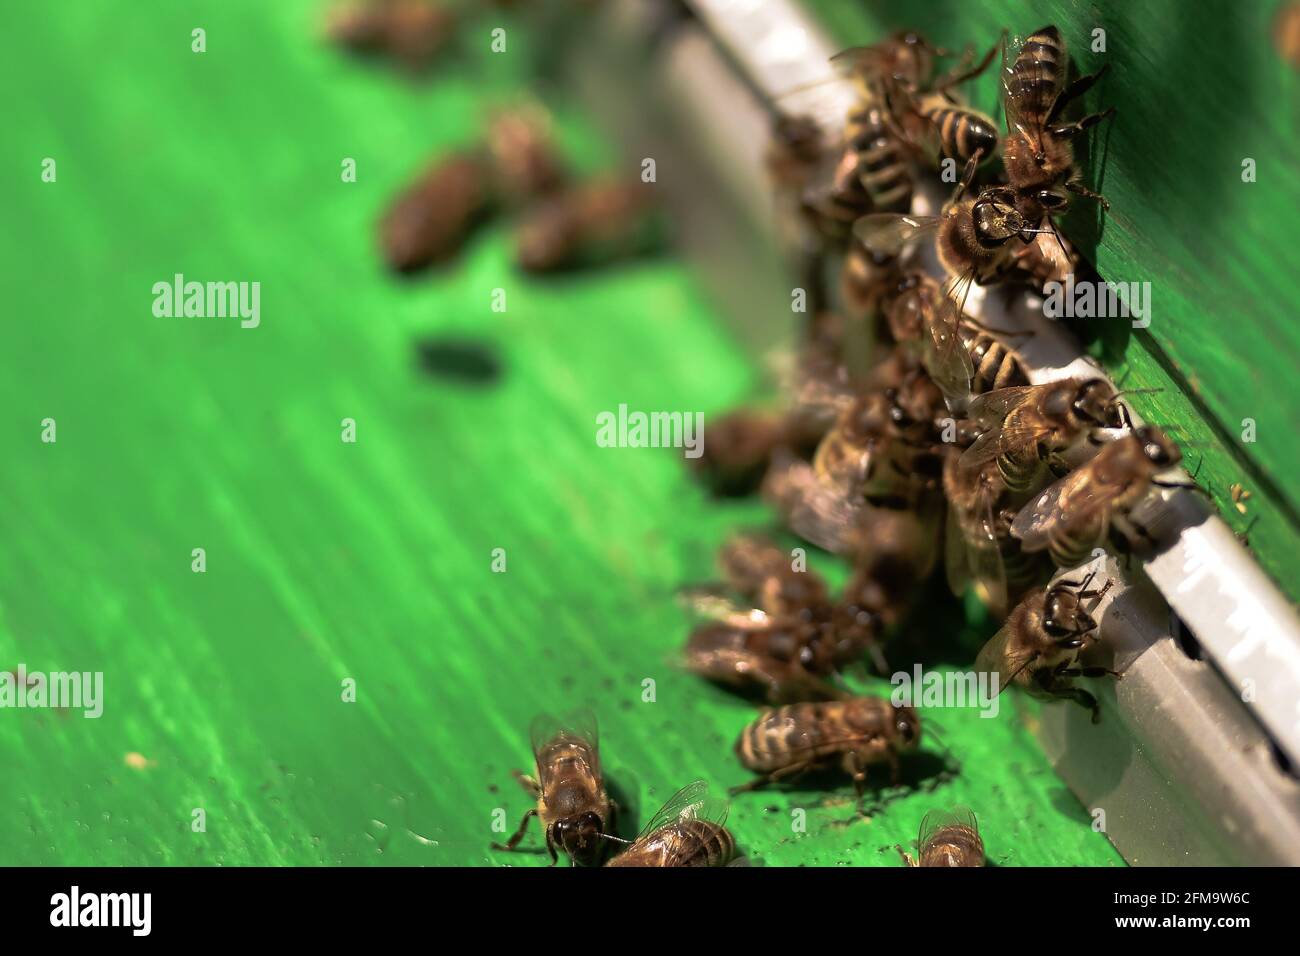 Bienen sammeln Honig und schwärmen um den Bienenstock herum. Bienen fliegen um den Bienenstock, nachdem sie im Frühjahr Pollen gesammelt haben. Selektiver Fokus. Stockfoto